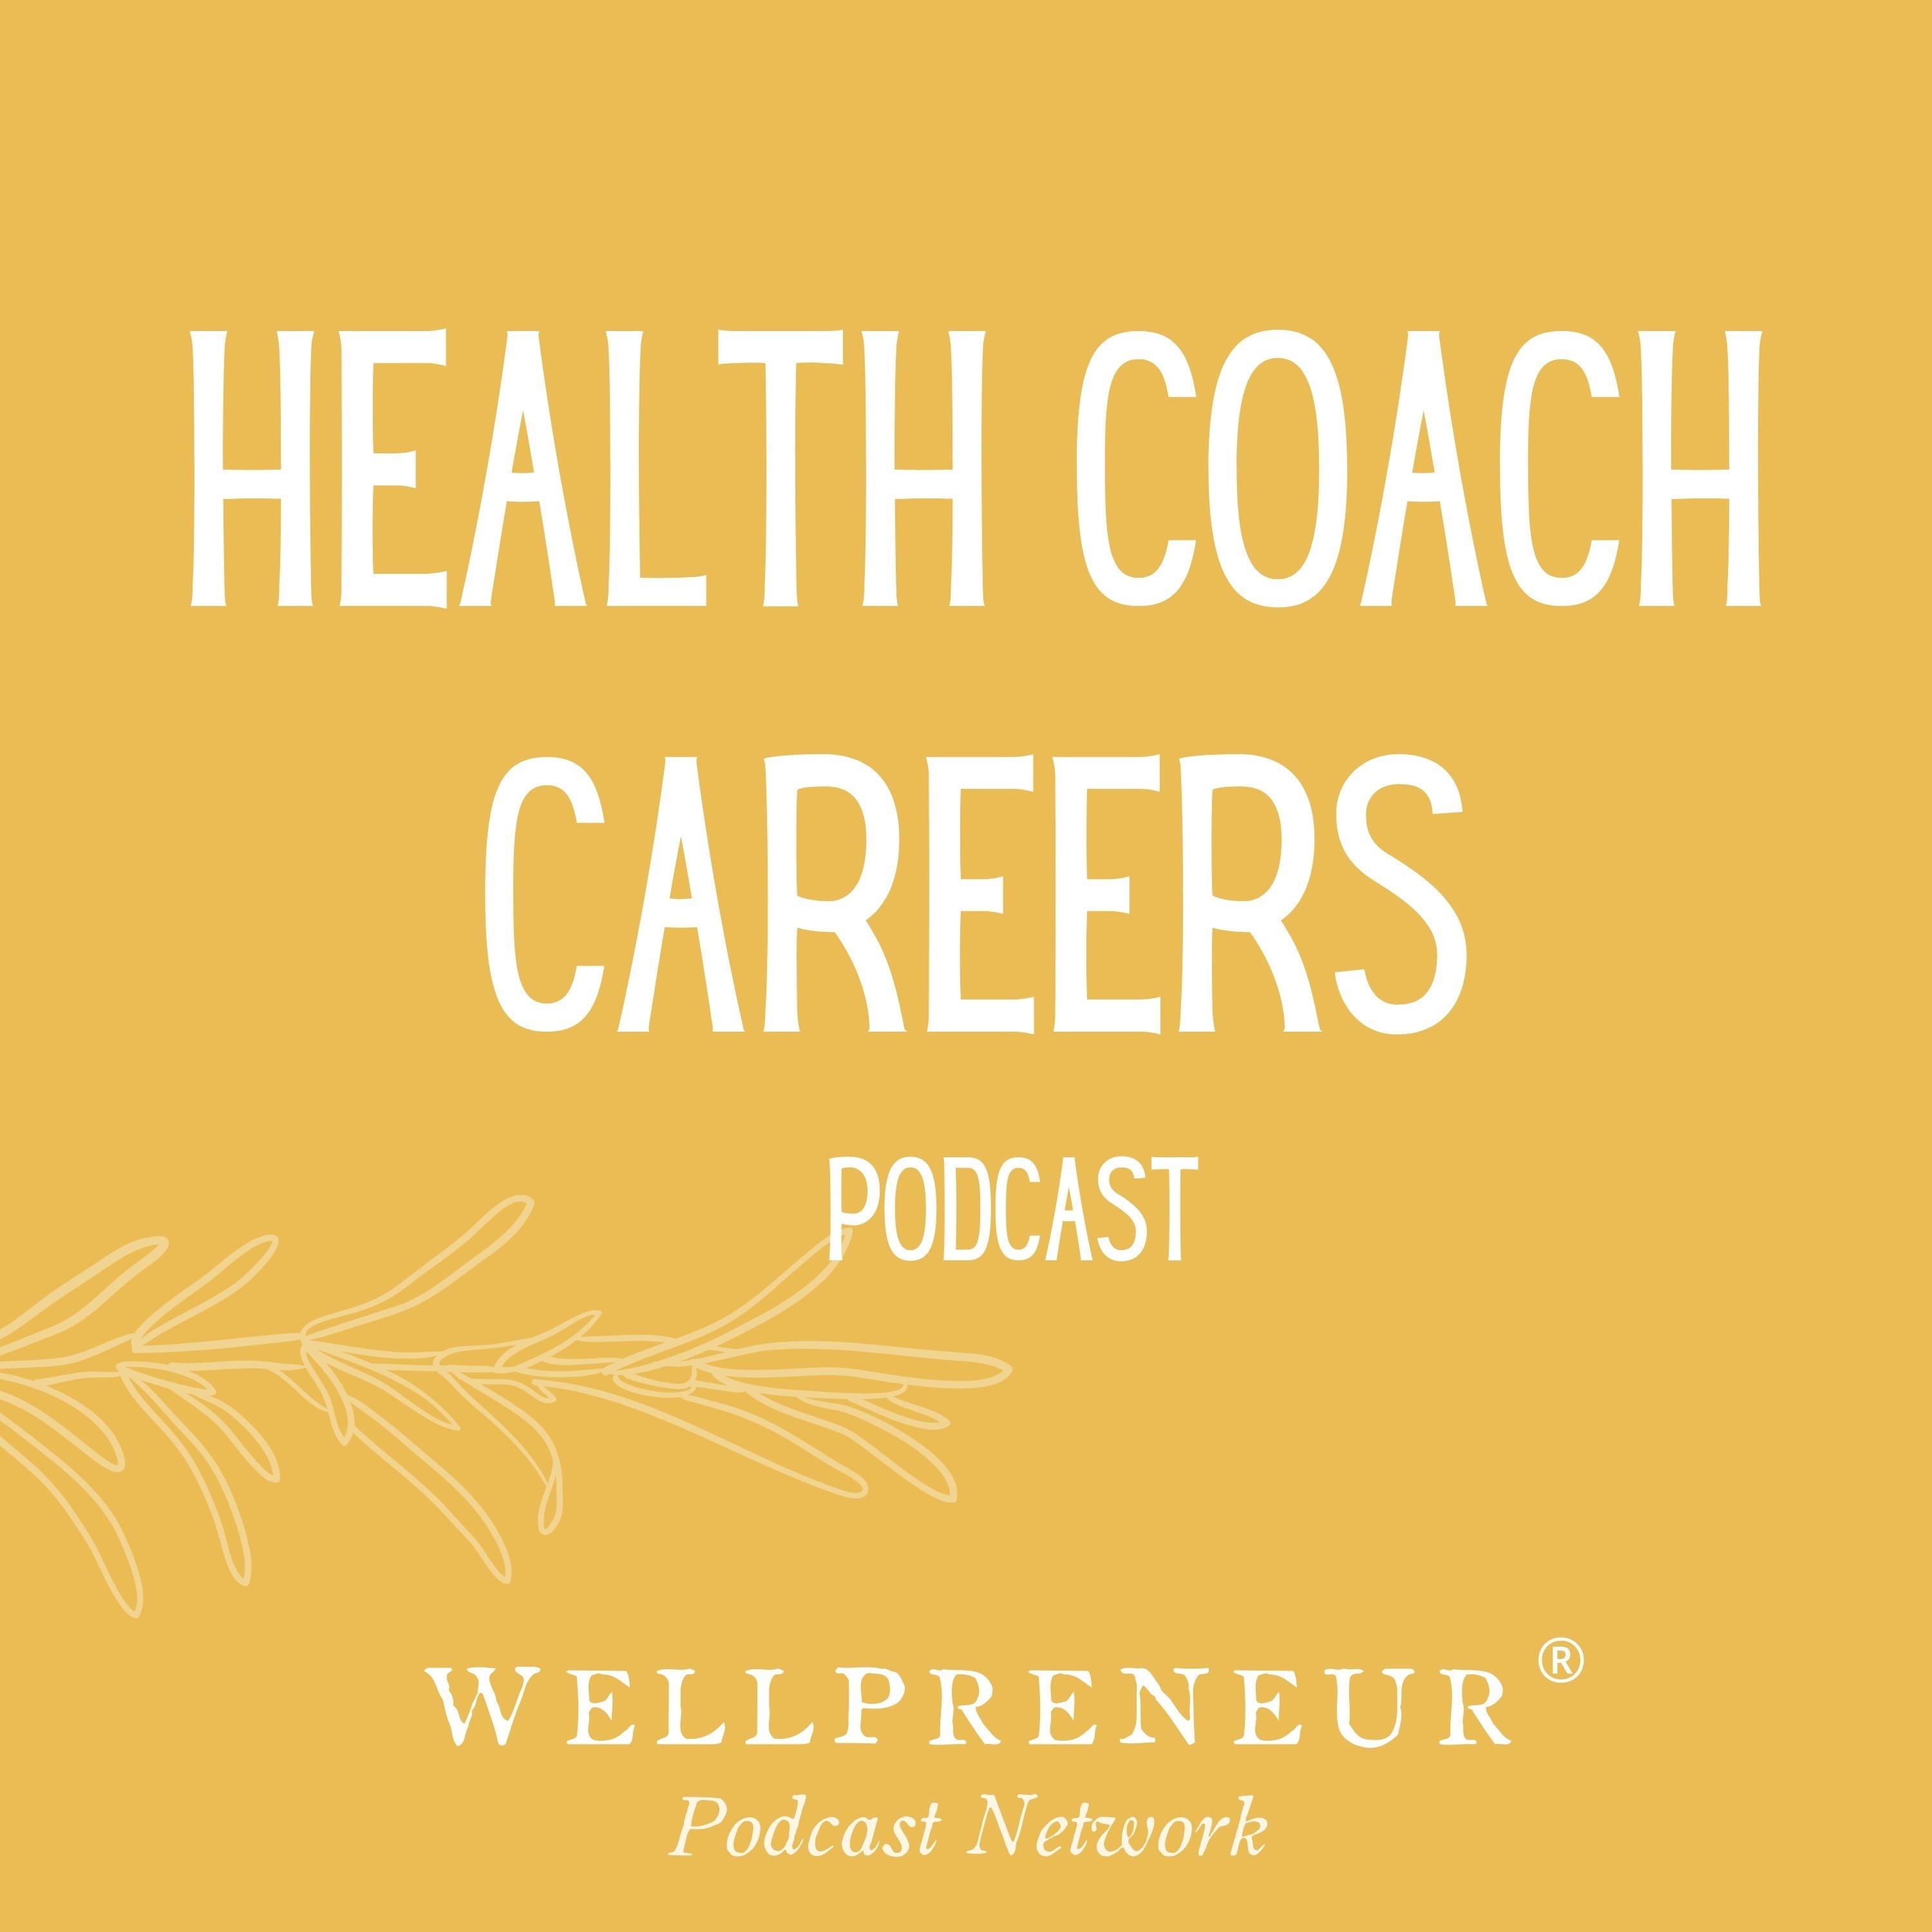 Health Coach Careers by Wellpreneur